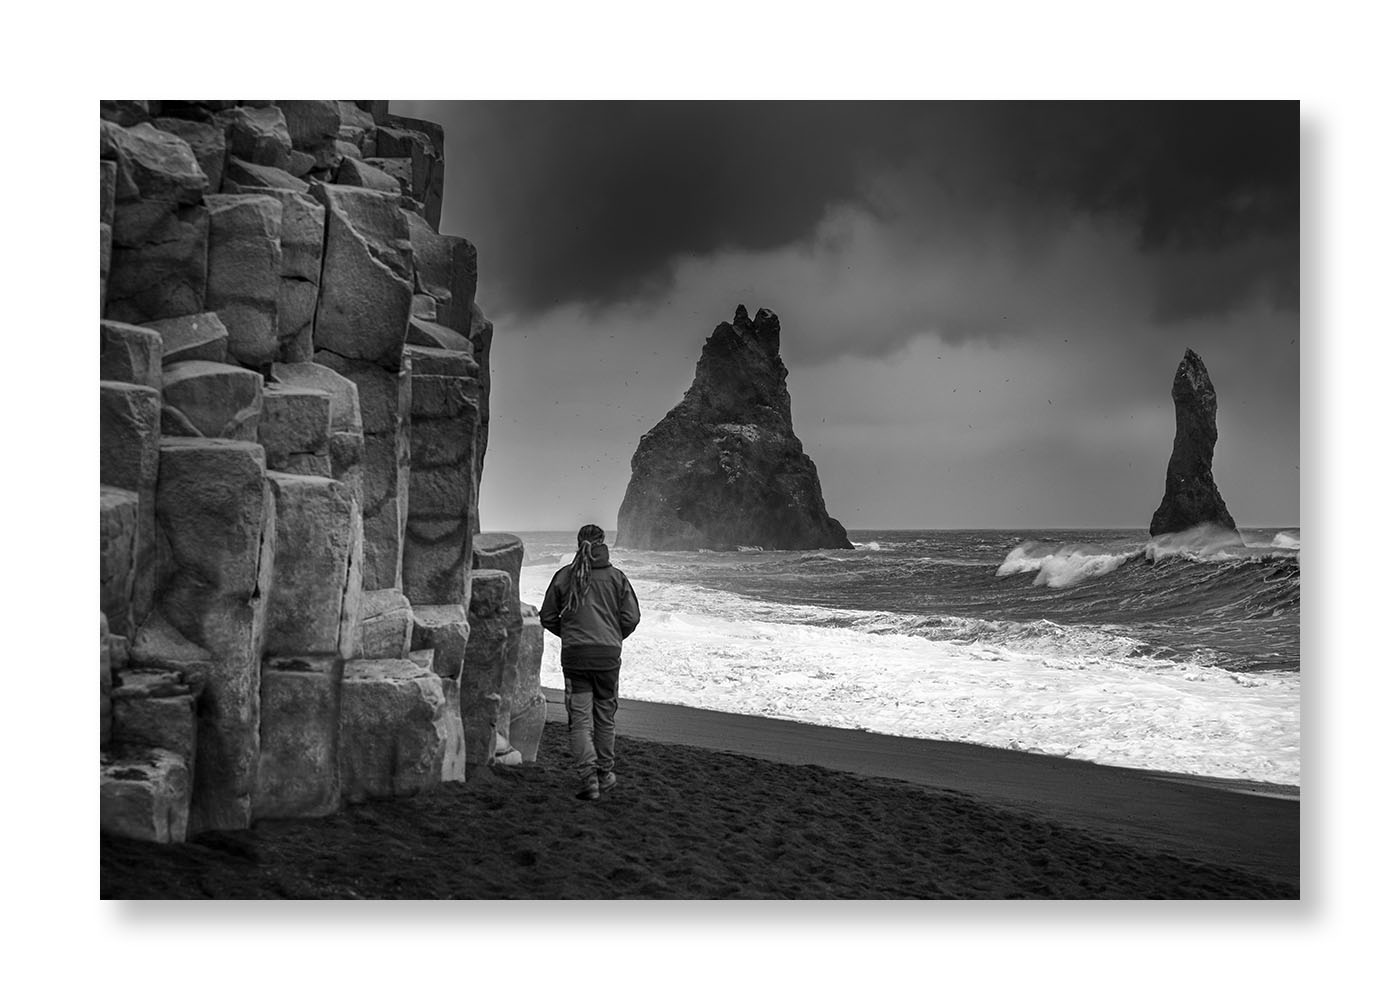 Un homme sur une plage près de rochers en colonne  face à la mer ou deux  aiguilles rocheuses sorte de l'océan